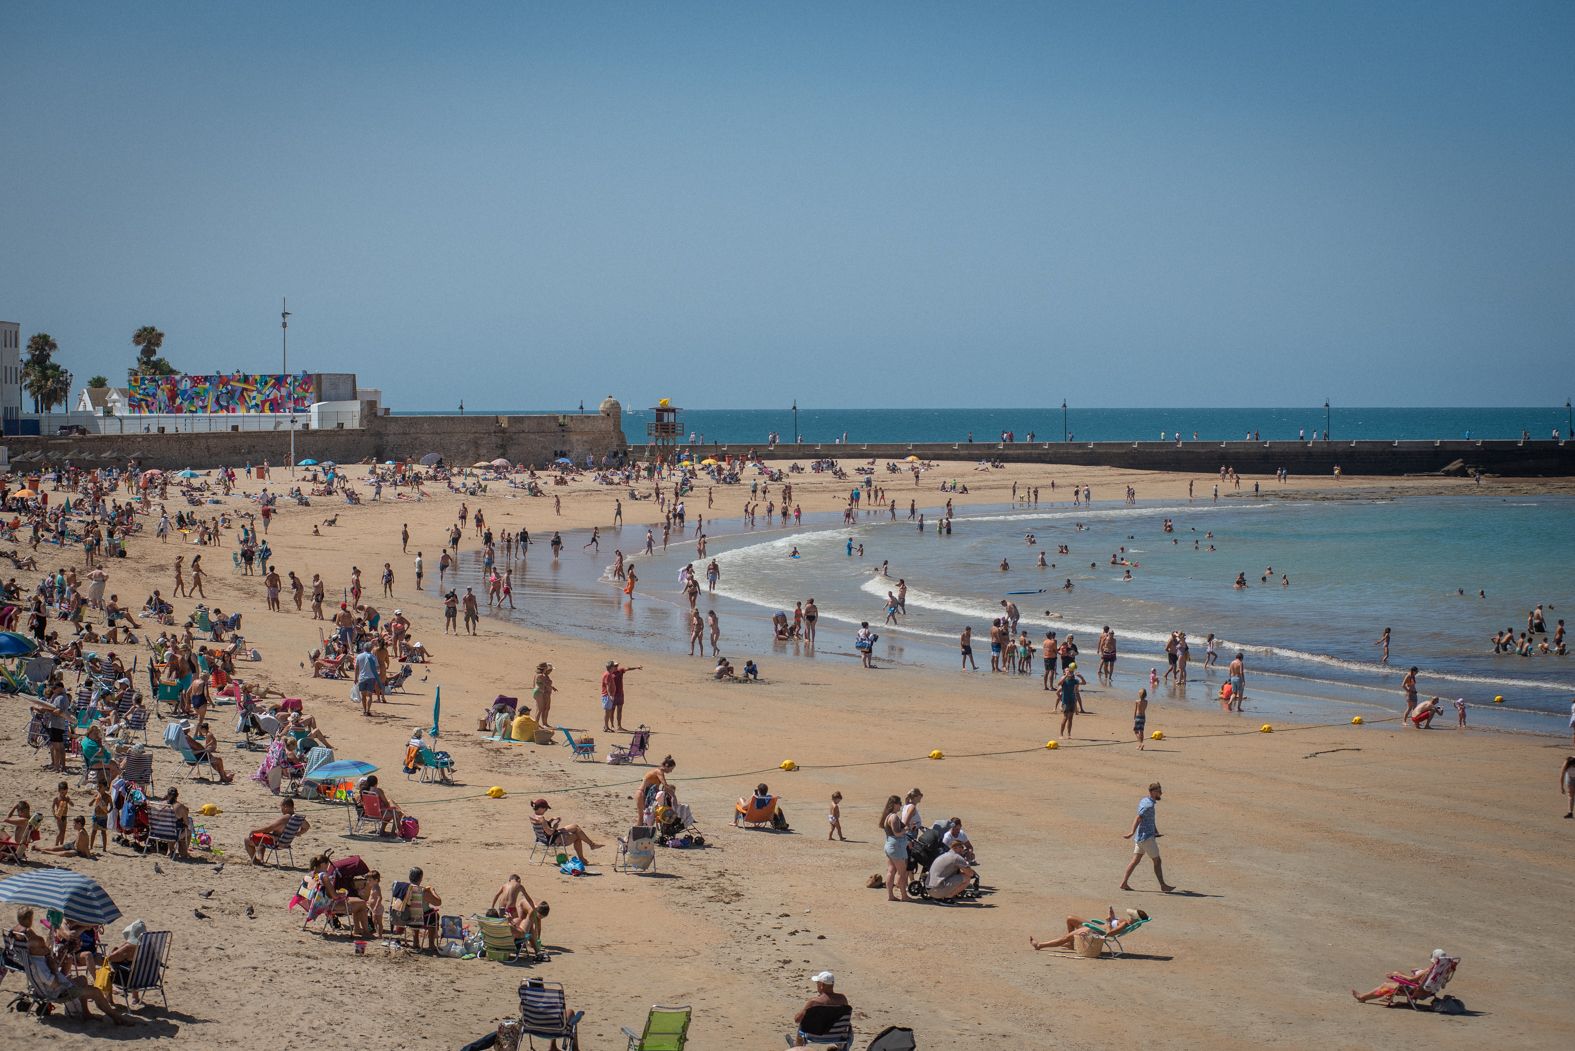 La playa de La Caleta, una de las más visitadas por el turismo en Cádiz.